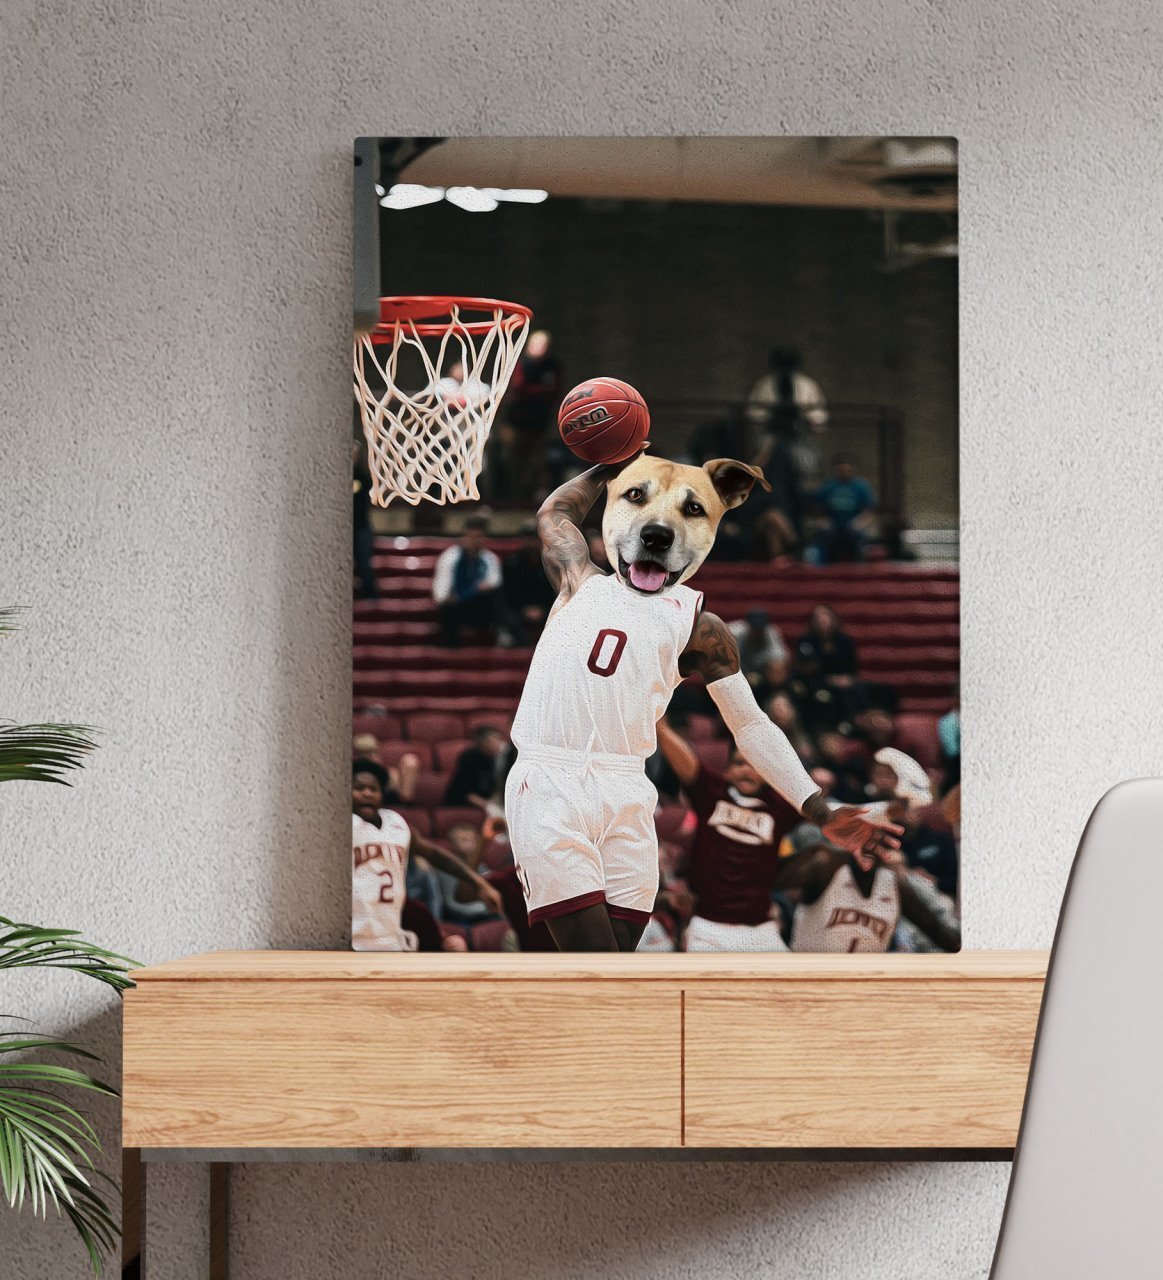 Evcil Dostlara Özel Basketbol Oyuncusu Tasarımlı Portre Kanvas Tablo 50x70cm-1